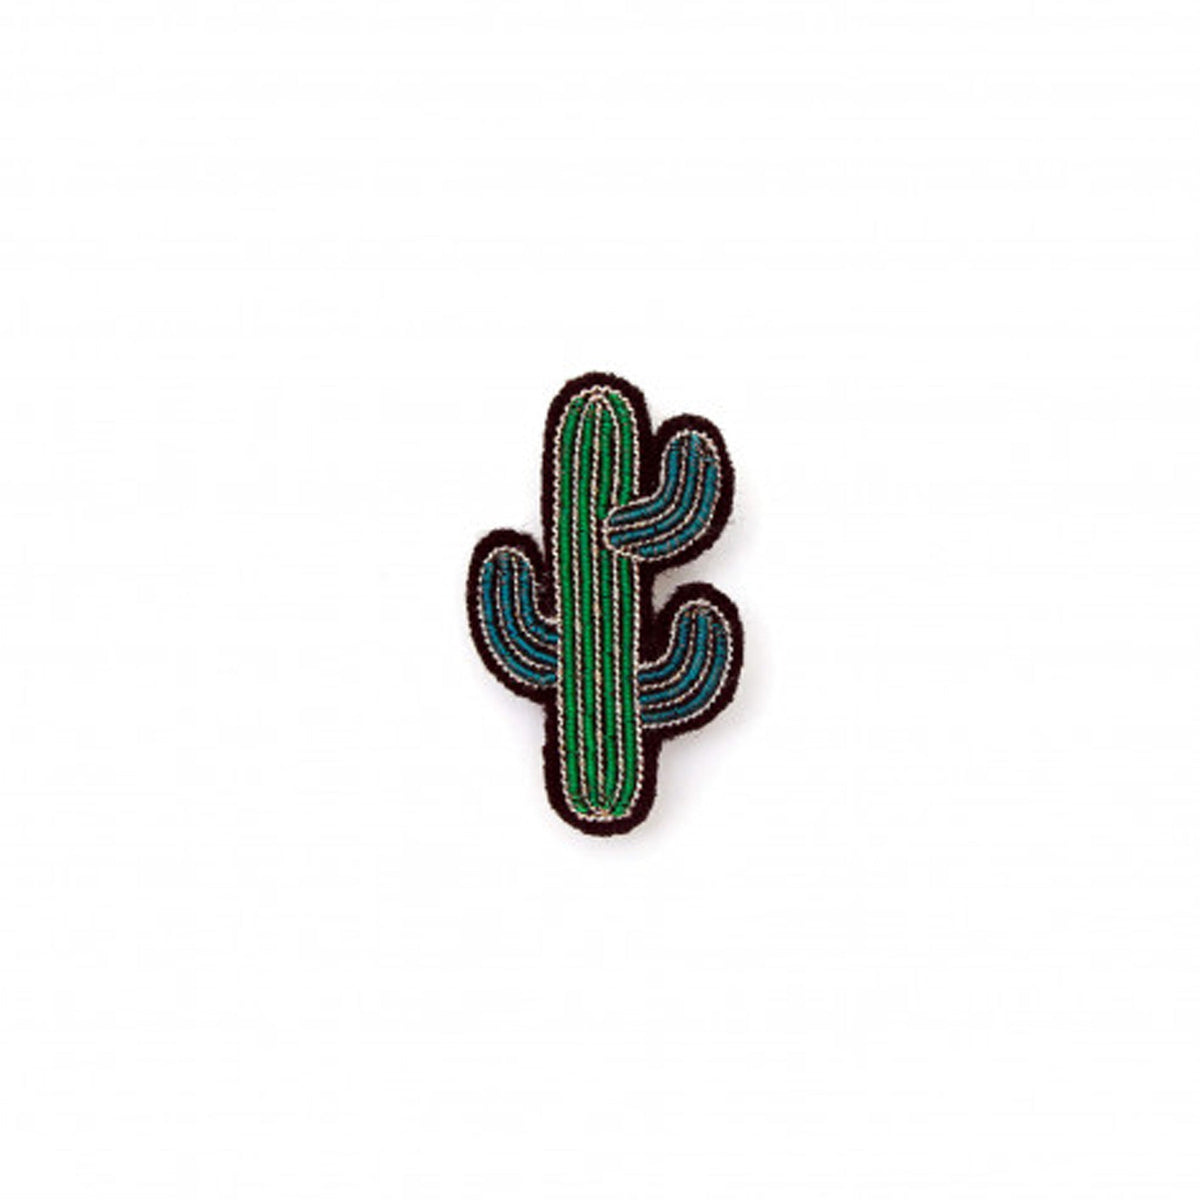 Brosche Kaktus